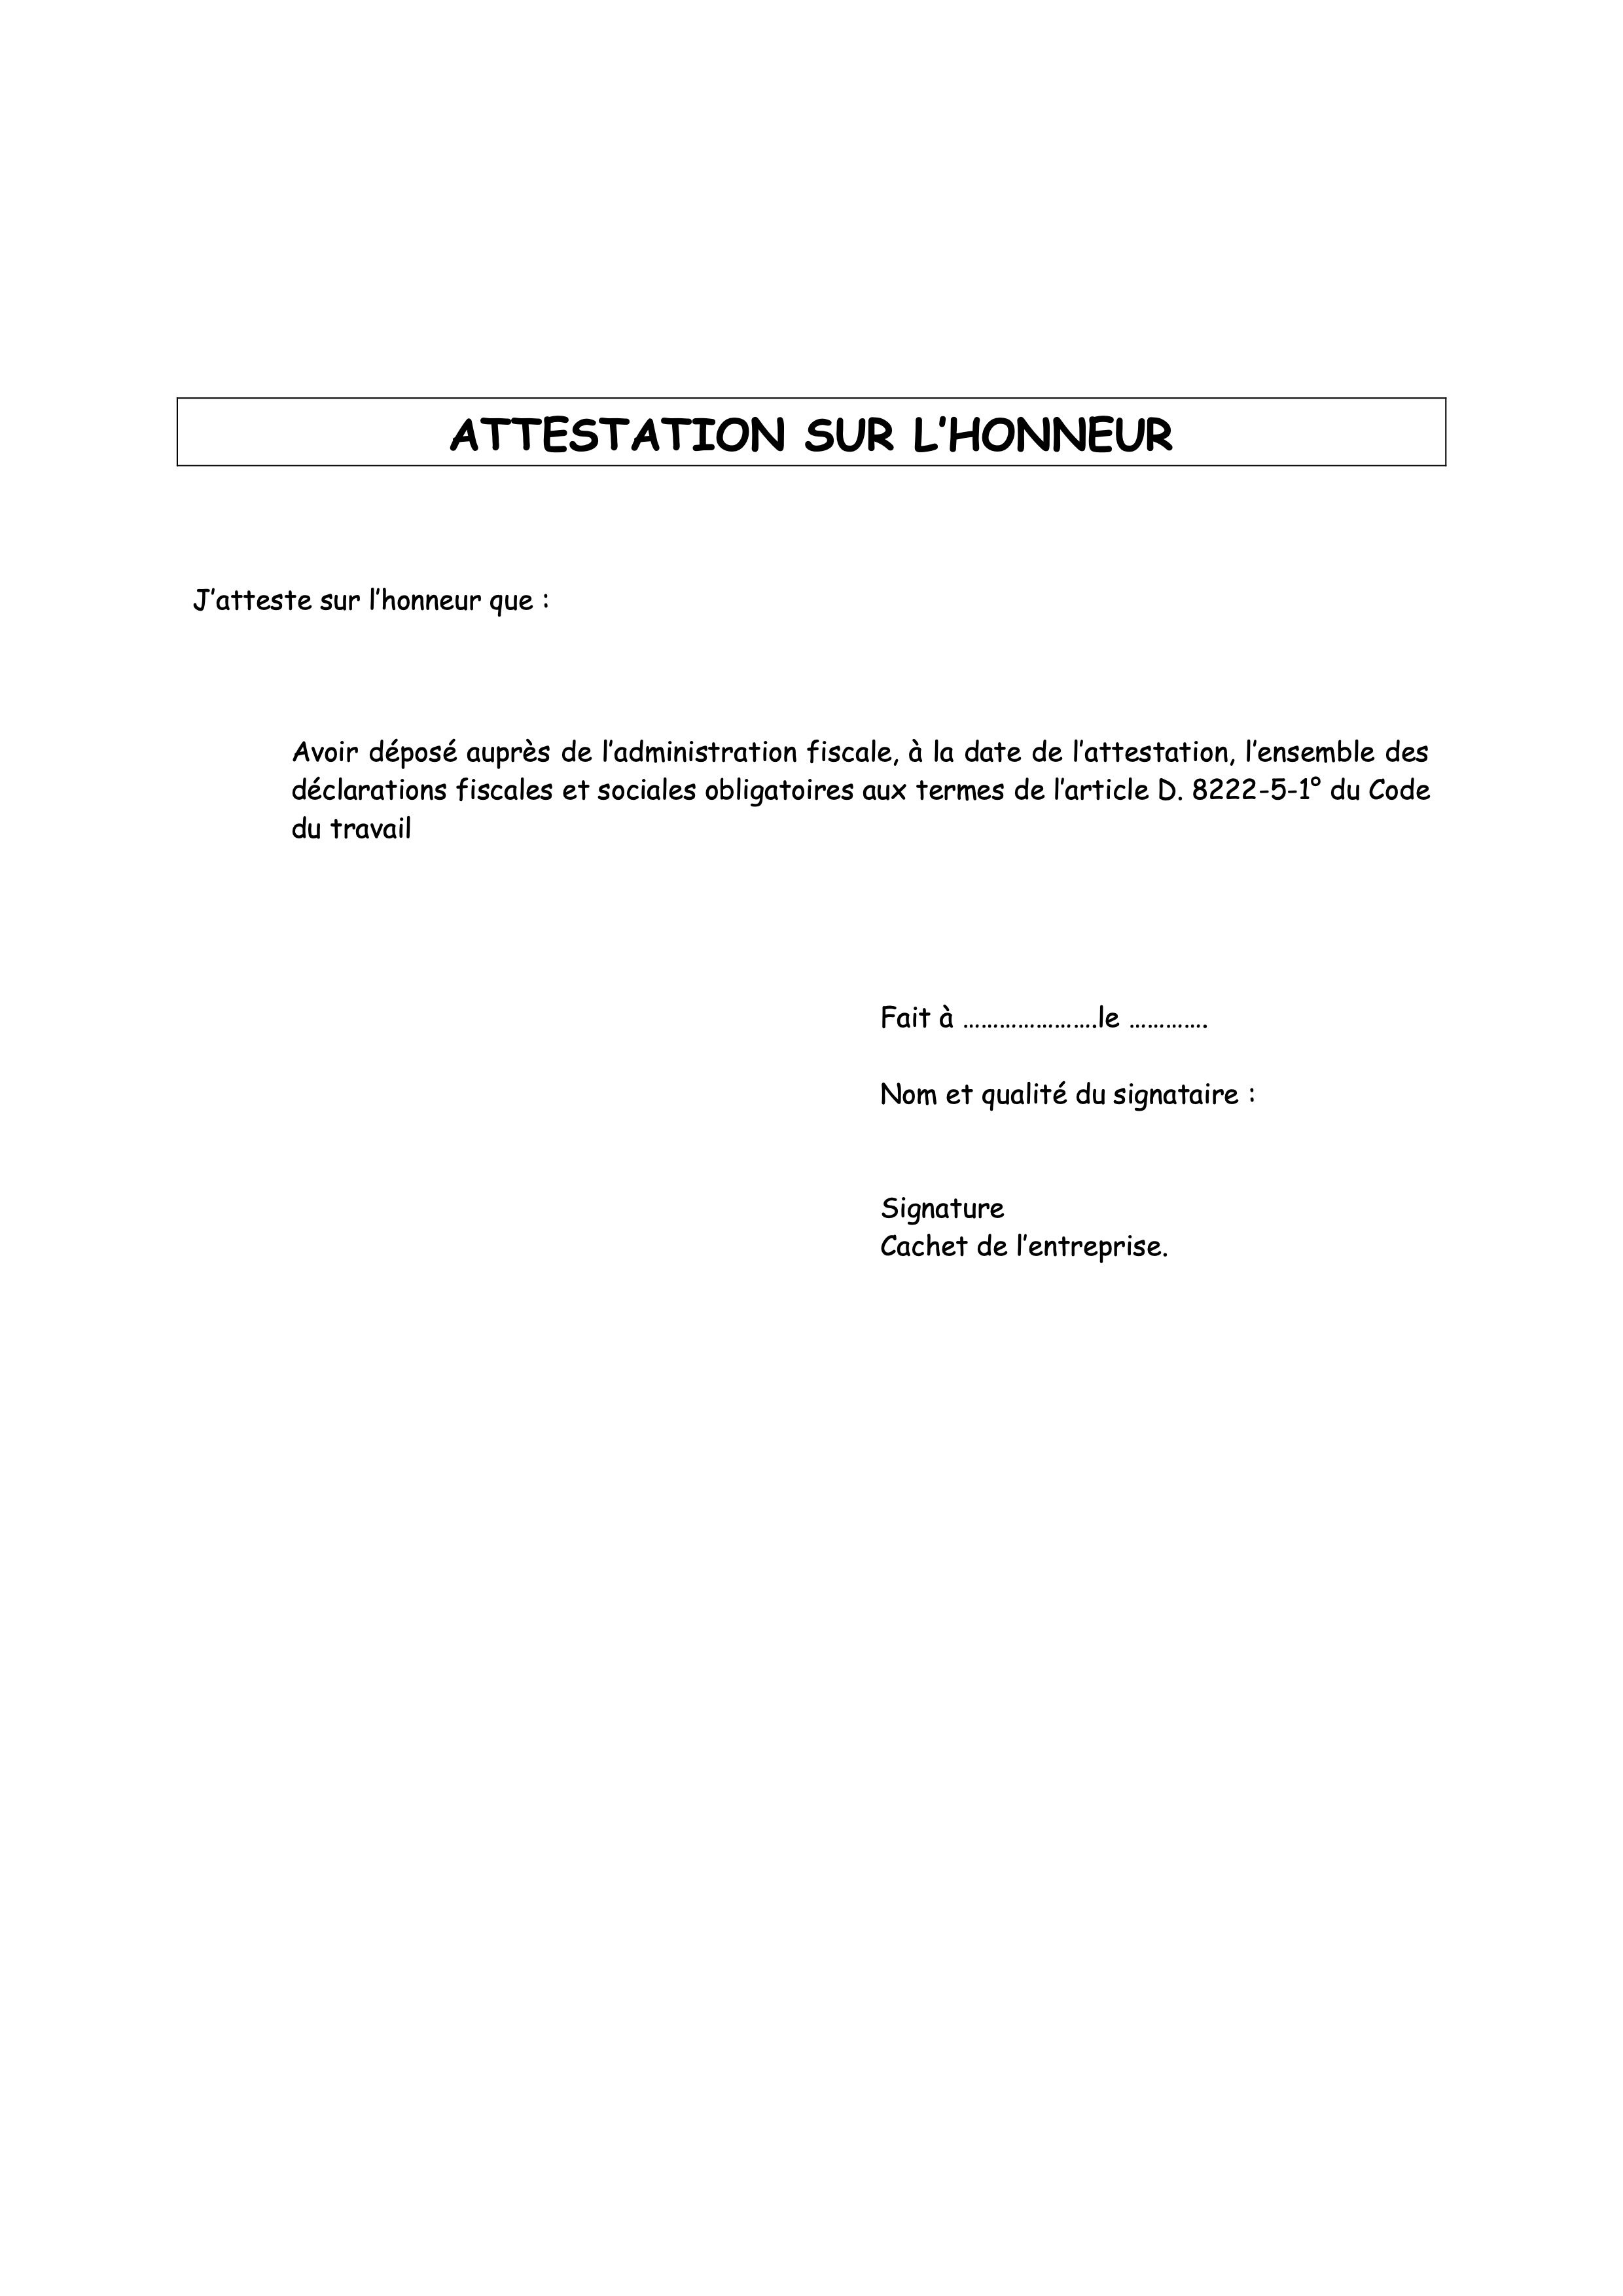 Attestation_sur_l_honneur_de_de_po_t_de_toutes_les_de_clarations_fiscales_re_glementaires.jpg